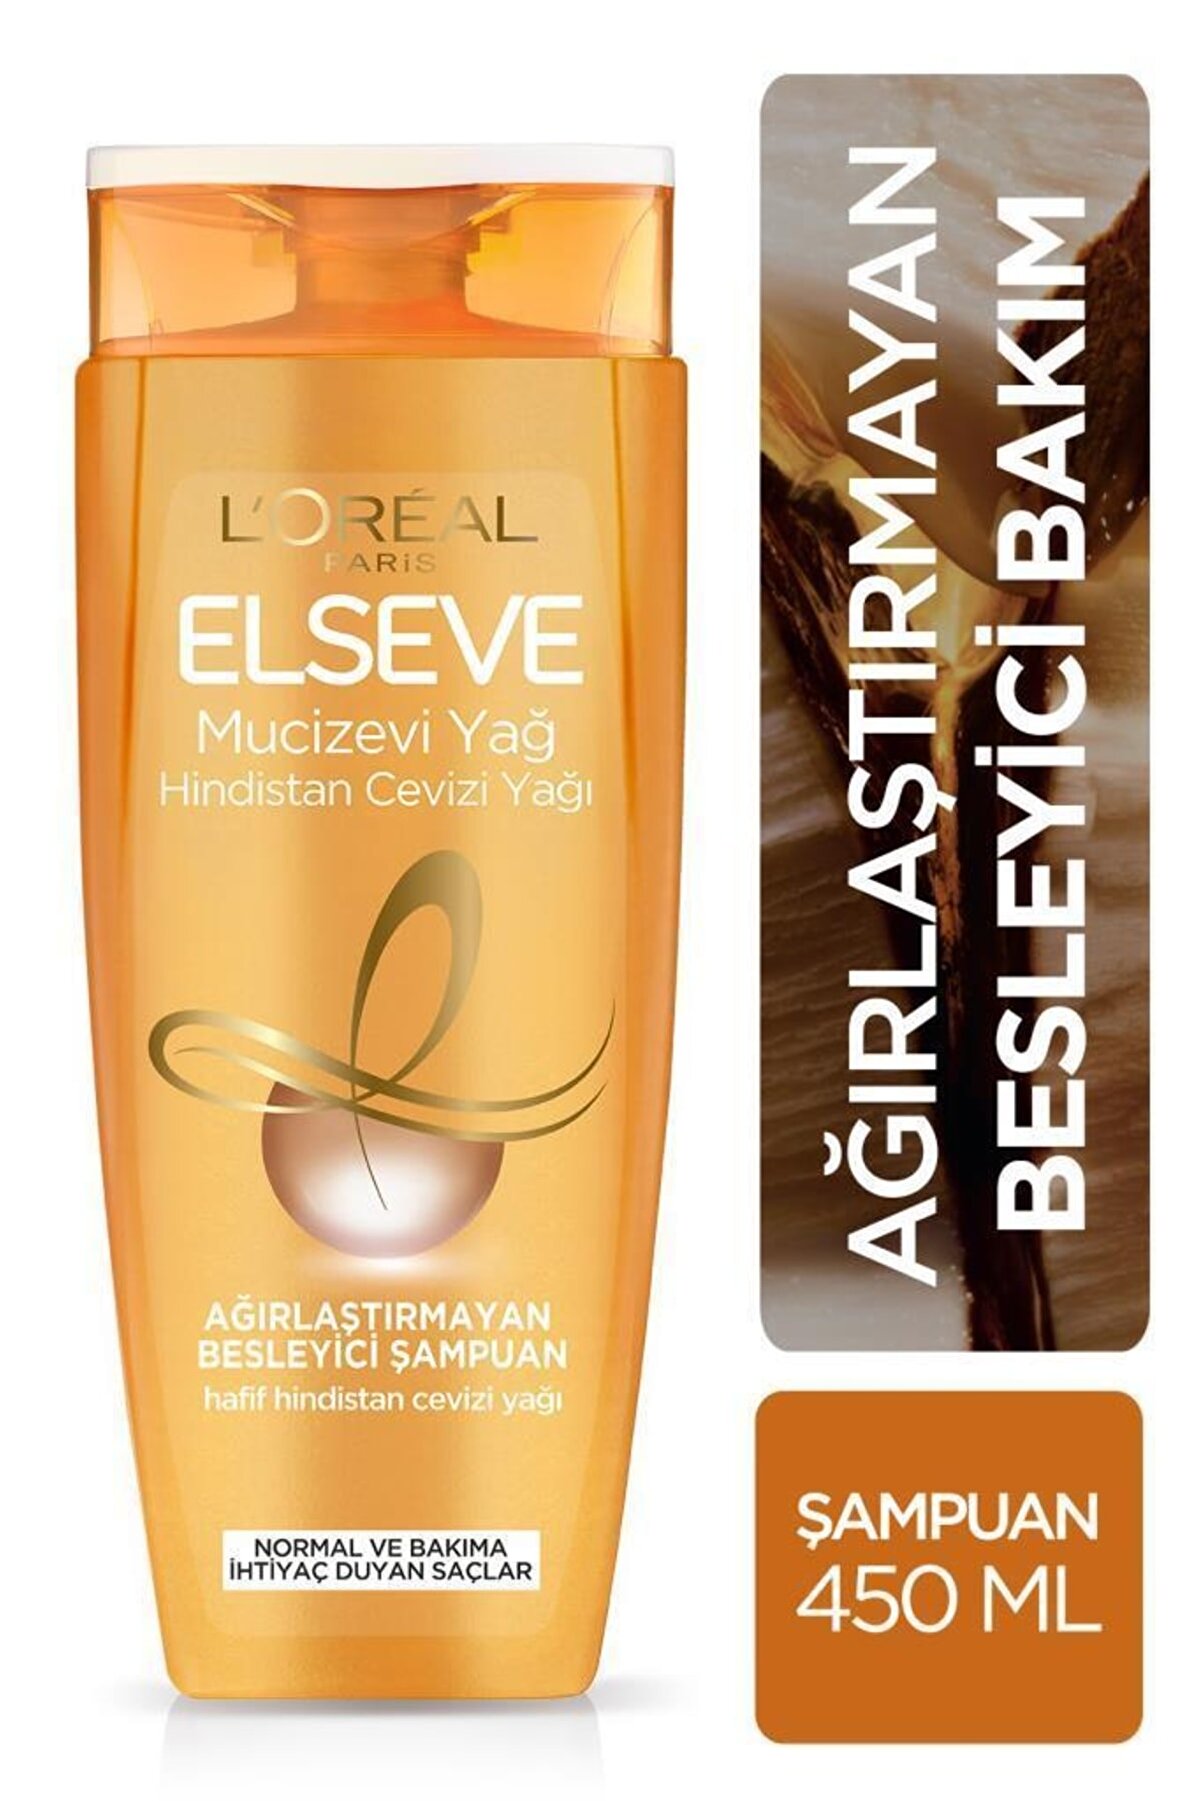 L'oréal Paris Mucizevi Hindistan Cevizi Yağı Ağırlaştırmayan Besleyici Şampuan 450 ml_0